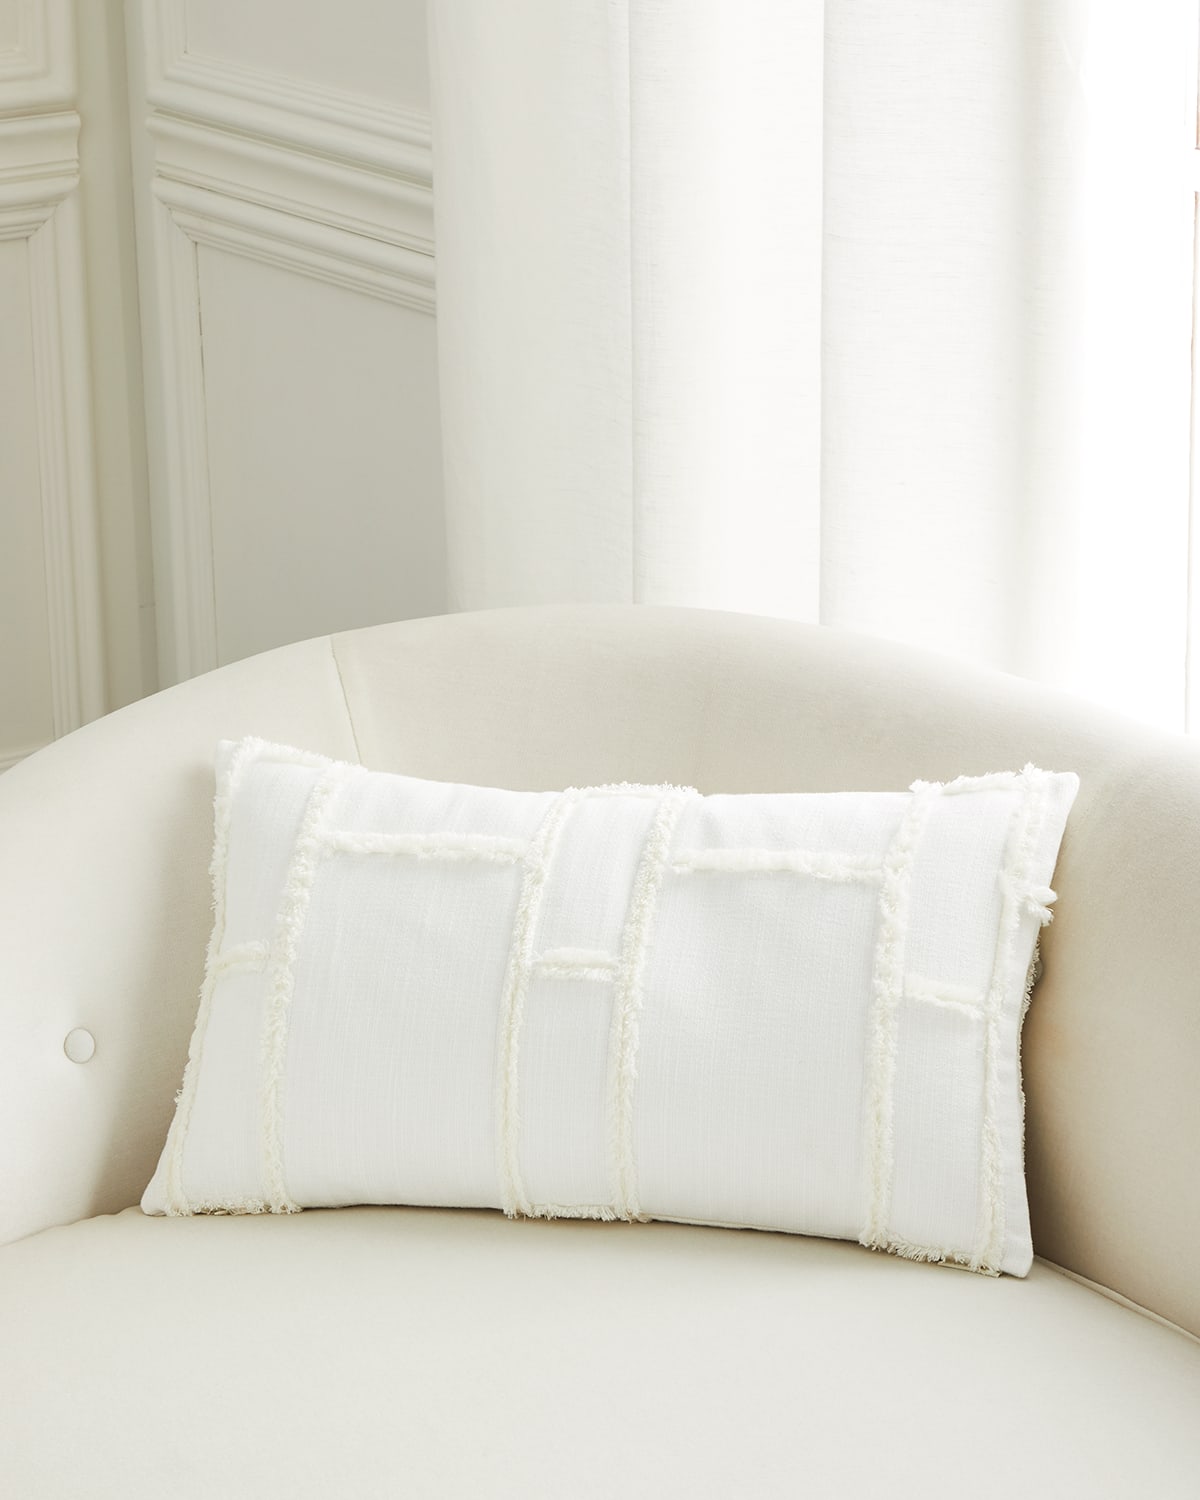 D.v. Kap Home Fringeworthy Lumbar Pillow